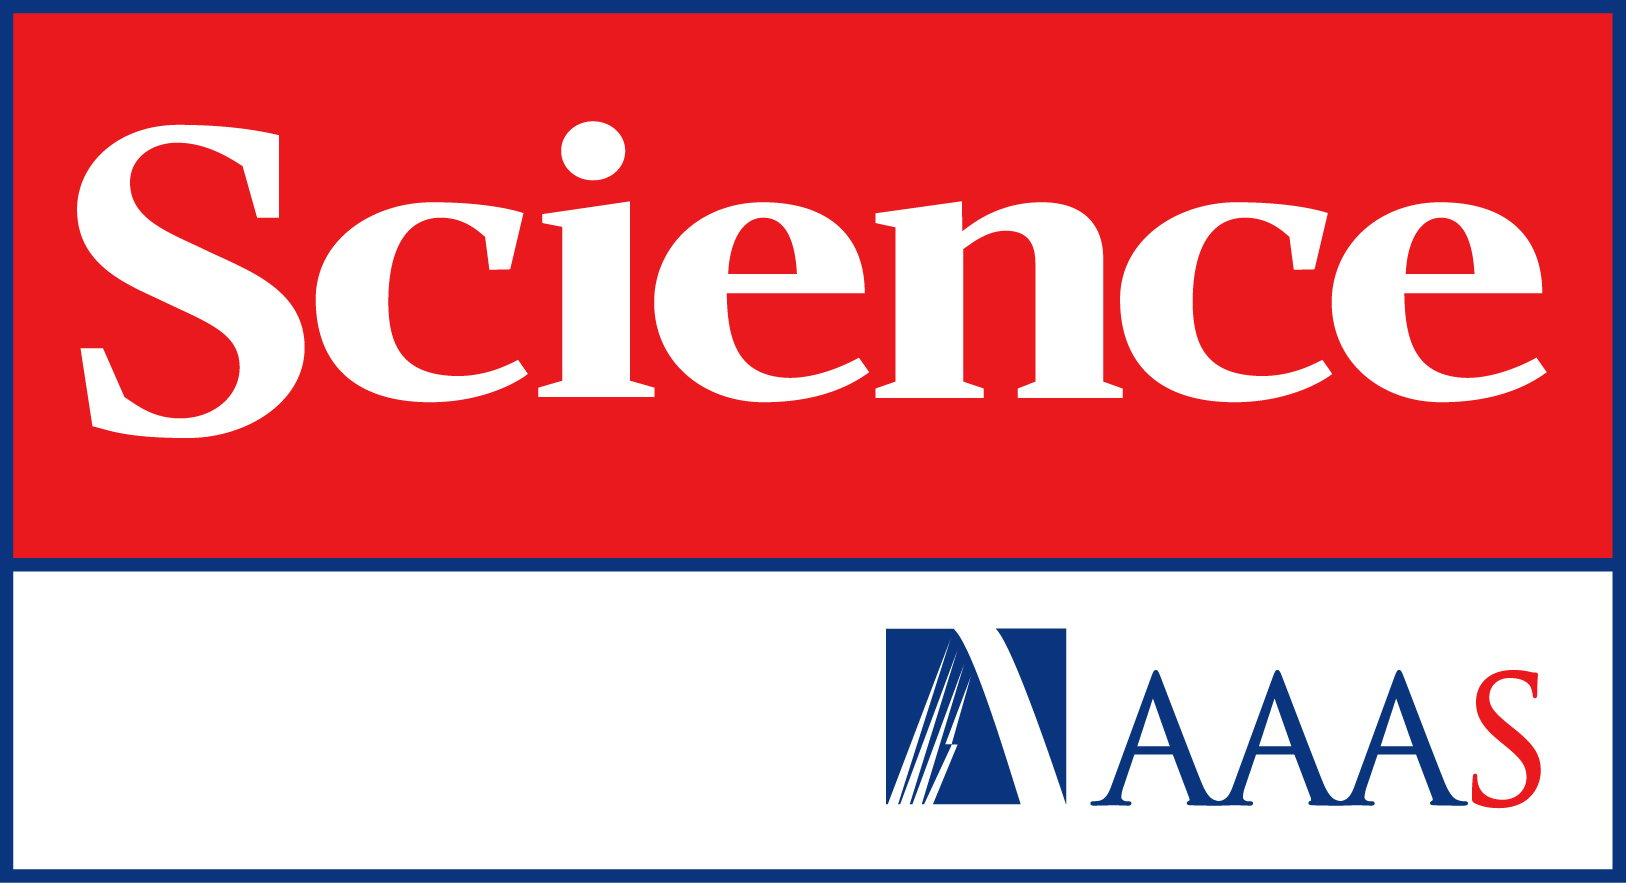 Science AAAS Logo